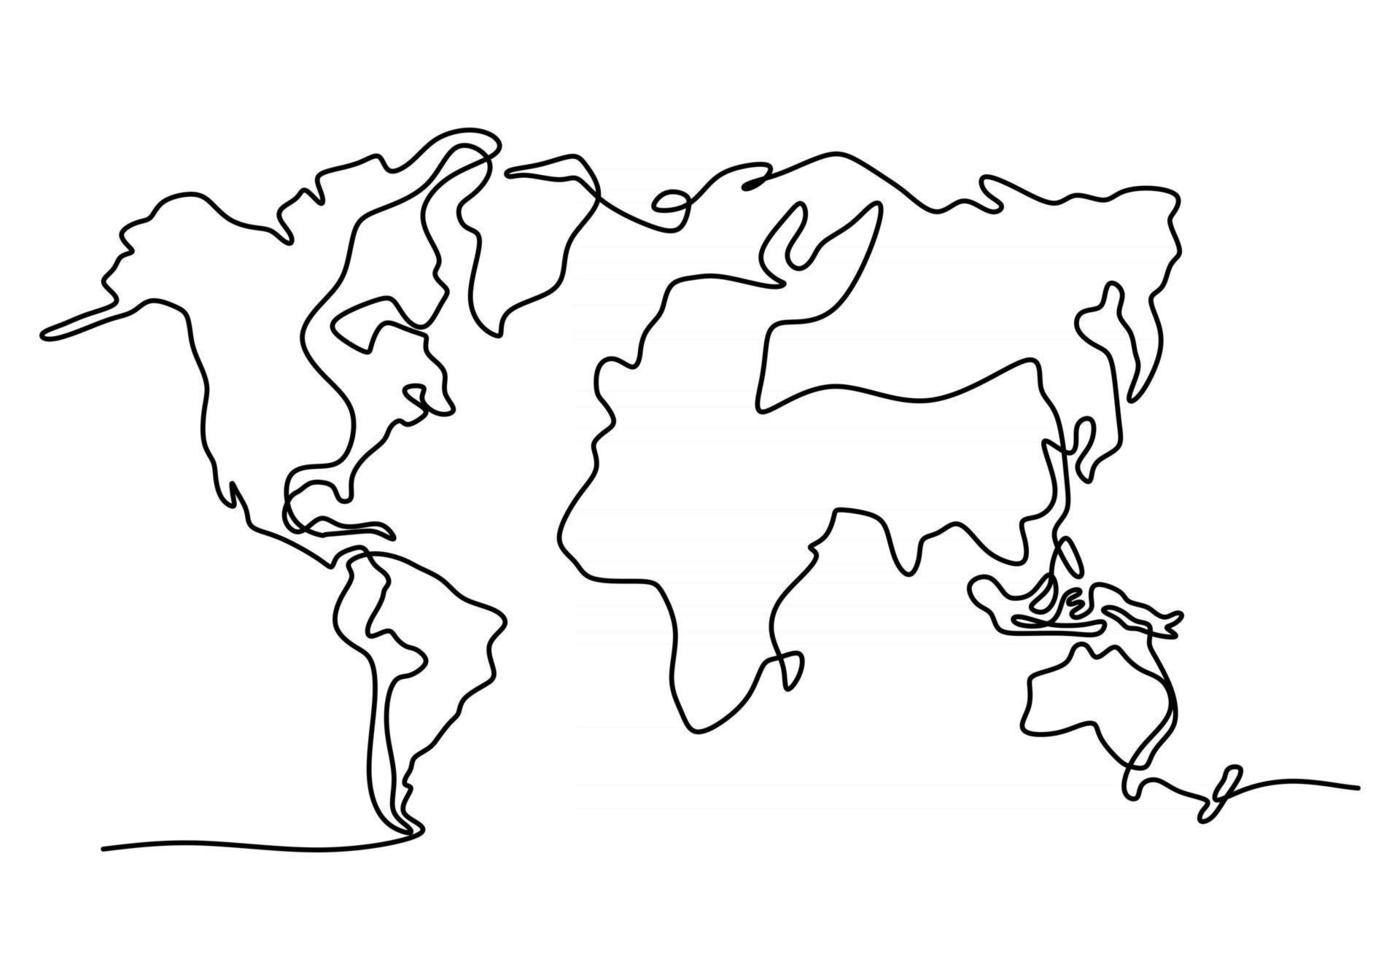 världskarta en linje ritning på vit isolerad bakgrund vektor